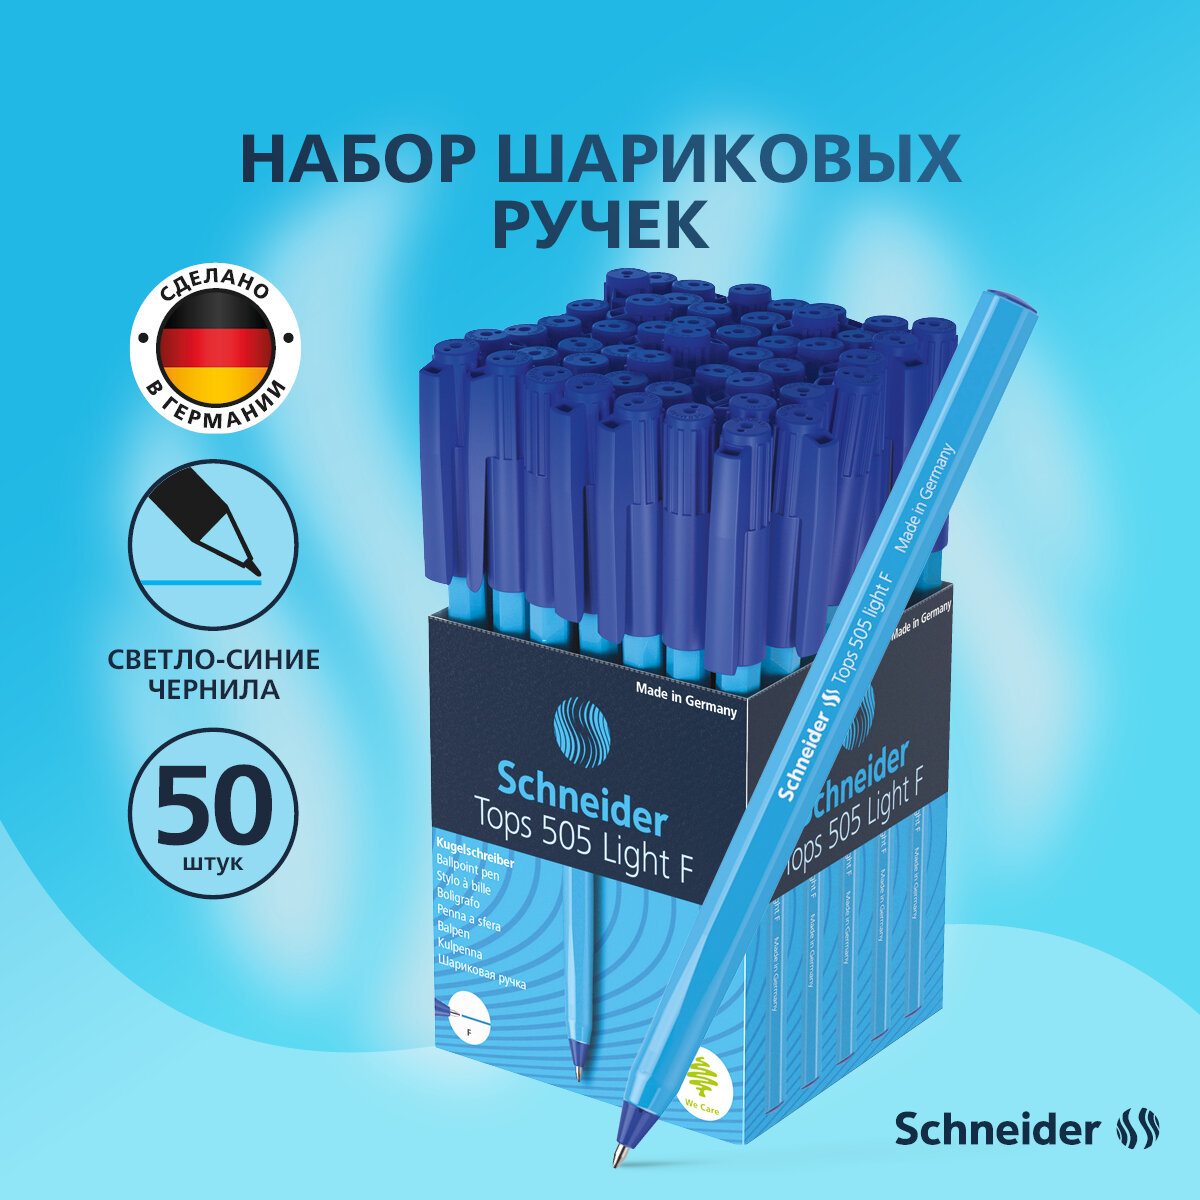 Ручки шариковые синие набор для школы 50 штук/ комплект Schneider "Tops 505 F" /масляные ручки шестигранные с пластиковым корпусом, линия письма 0,8 мм канцелярия для офиса/сделано в Германии